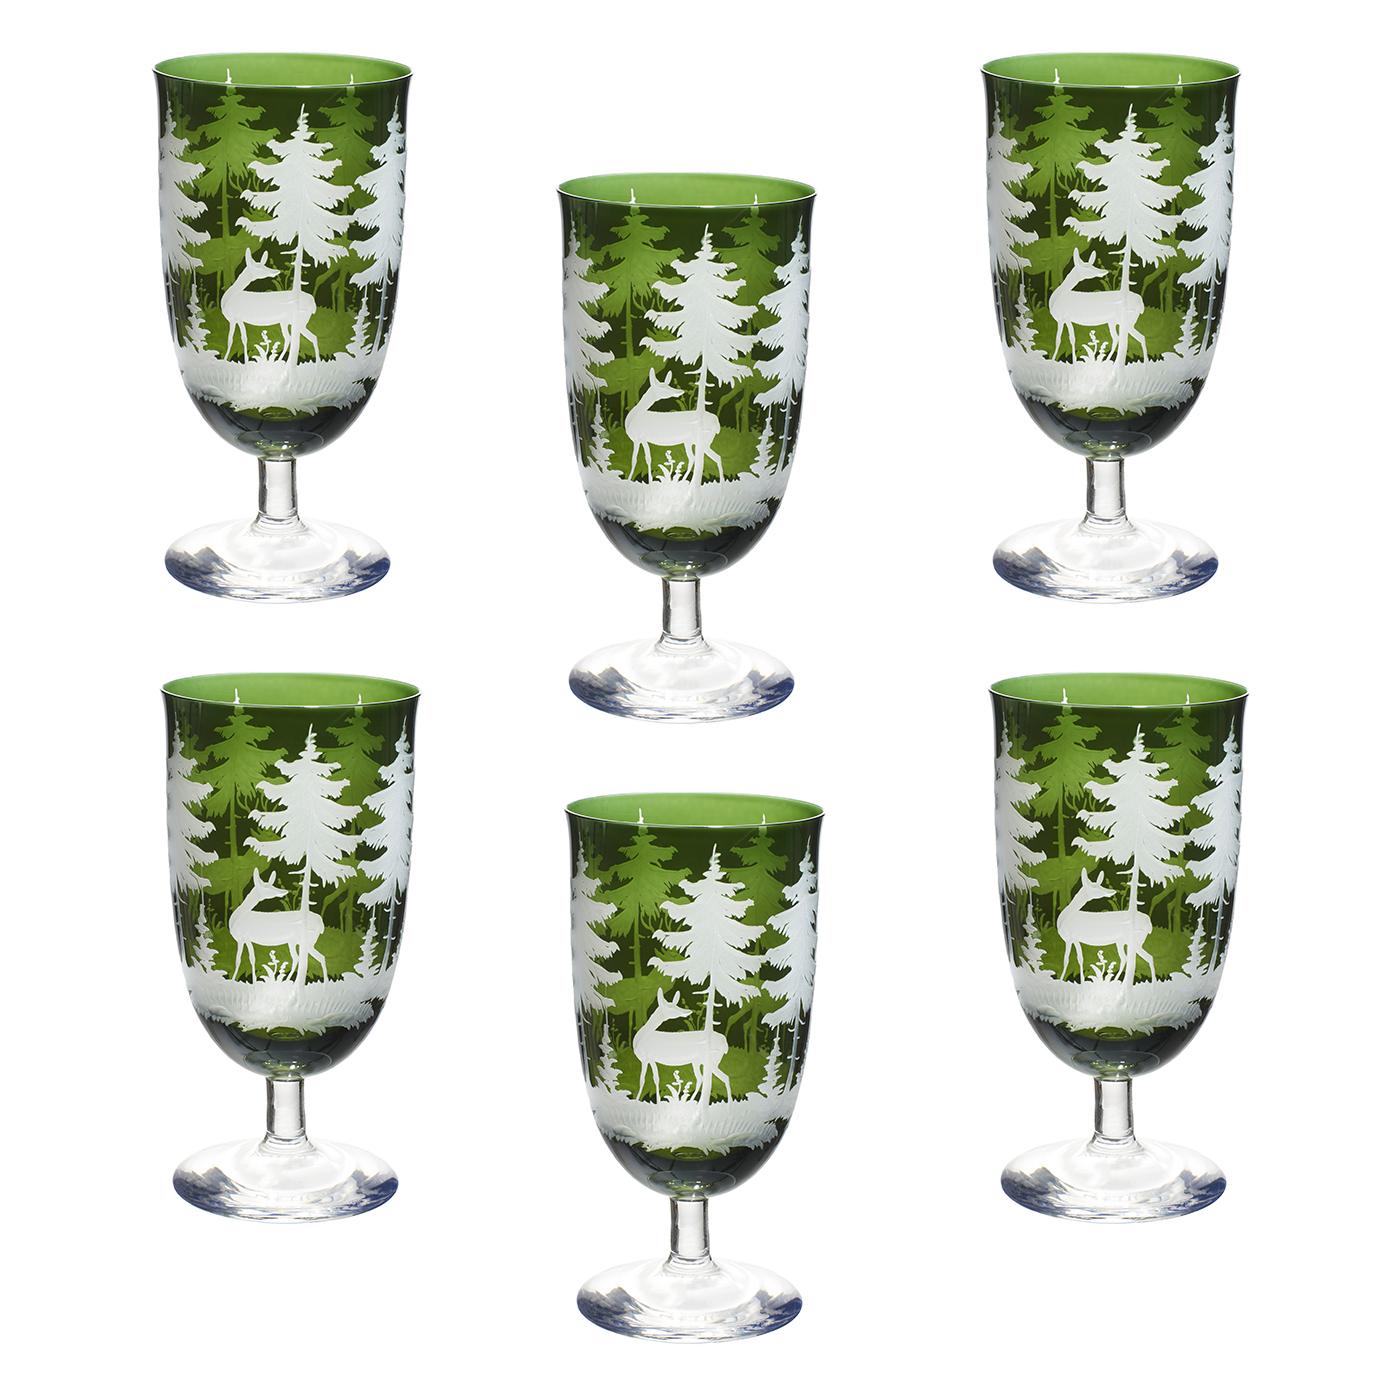 Ensemble de six verres à vin soufflés à la bouche en cristal vert avec une scène de chasse en forêt noire gravée à la main tout autour. Le décor est une ancienne scène de chasse bavaroise montrant des cerfs, des arbres et des bambous sur tout le